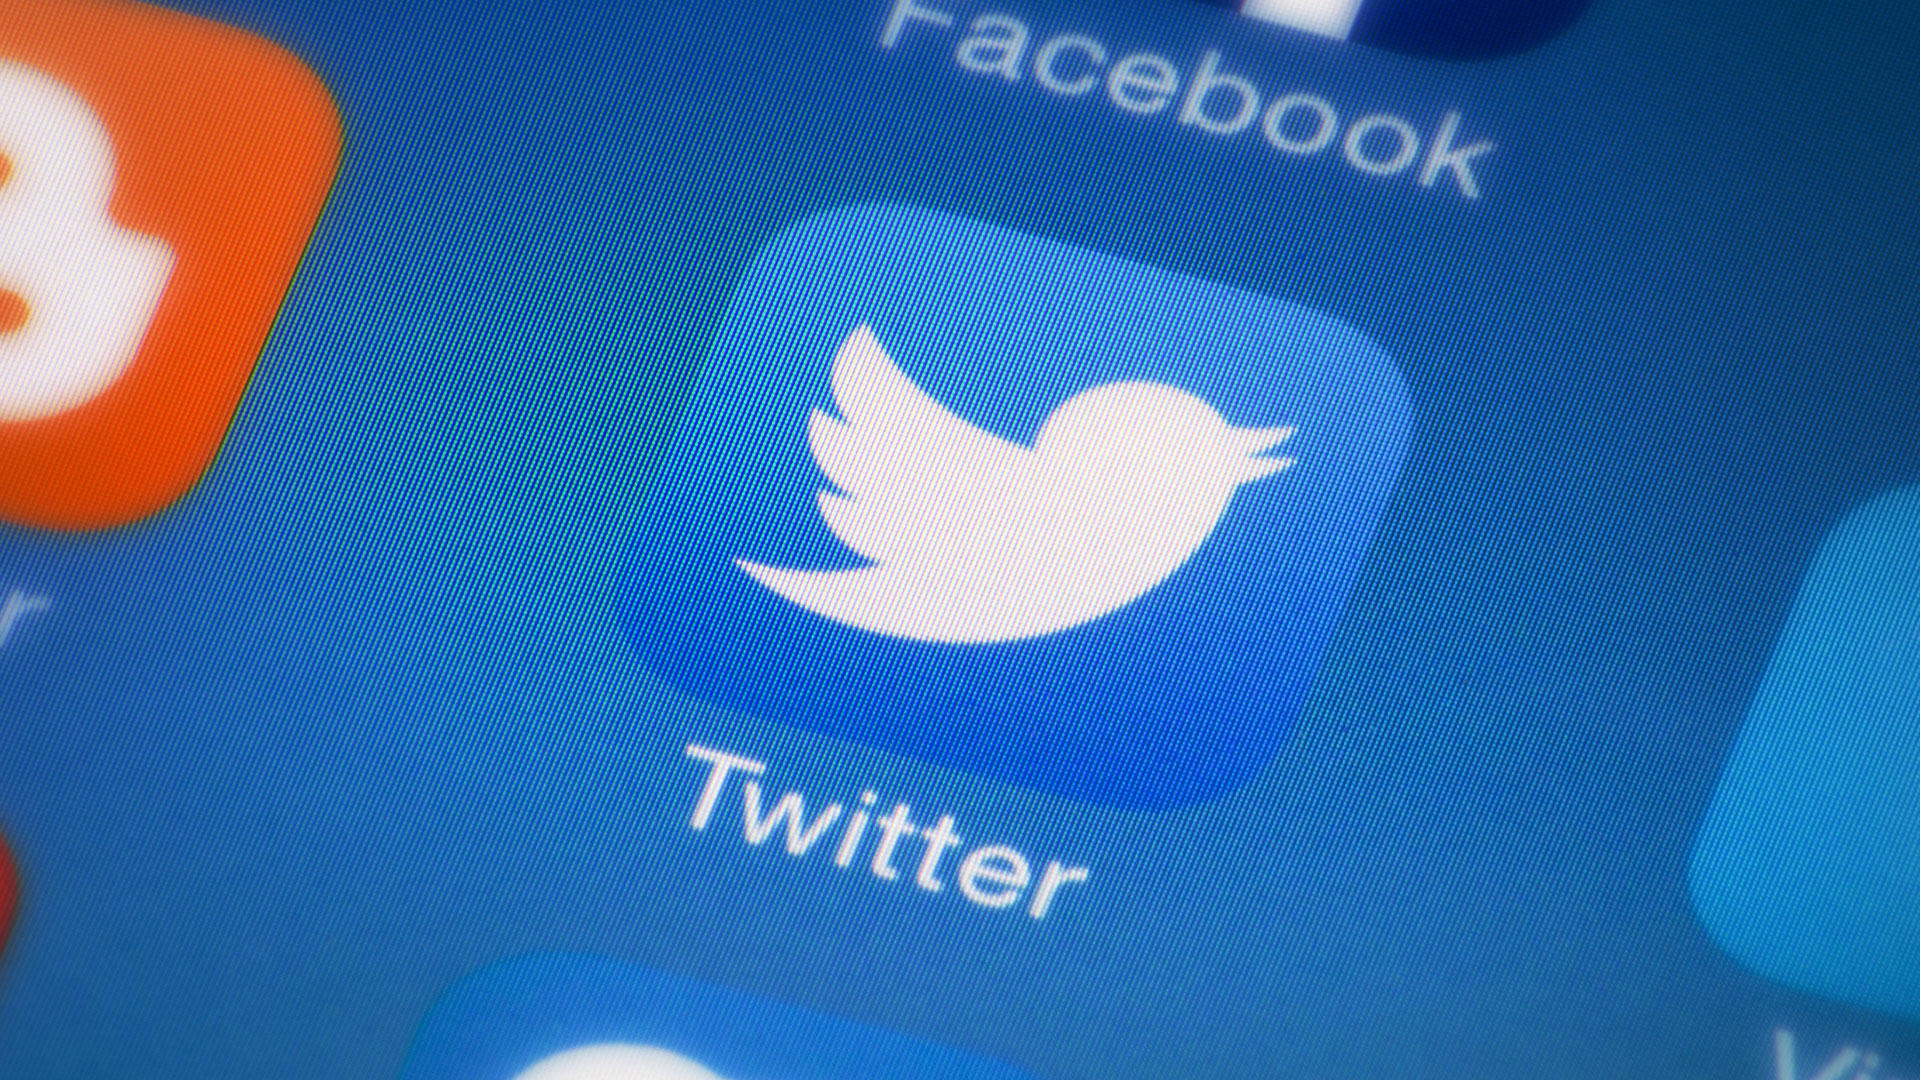 "Twitter" Rusiya, Çin və Türkiyə ilə əlaqəli olduğu iddia edilən 32 mindən çox hesabı bağlayıb